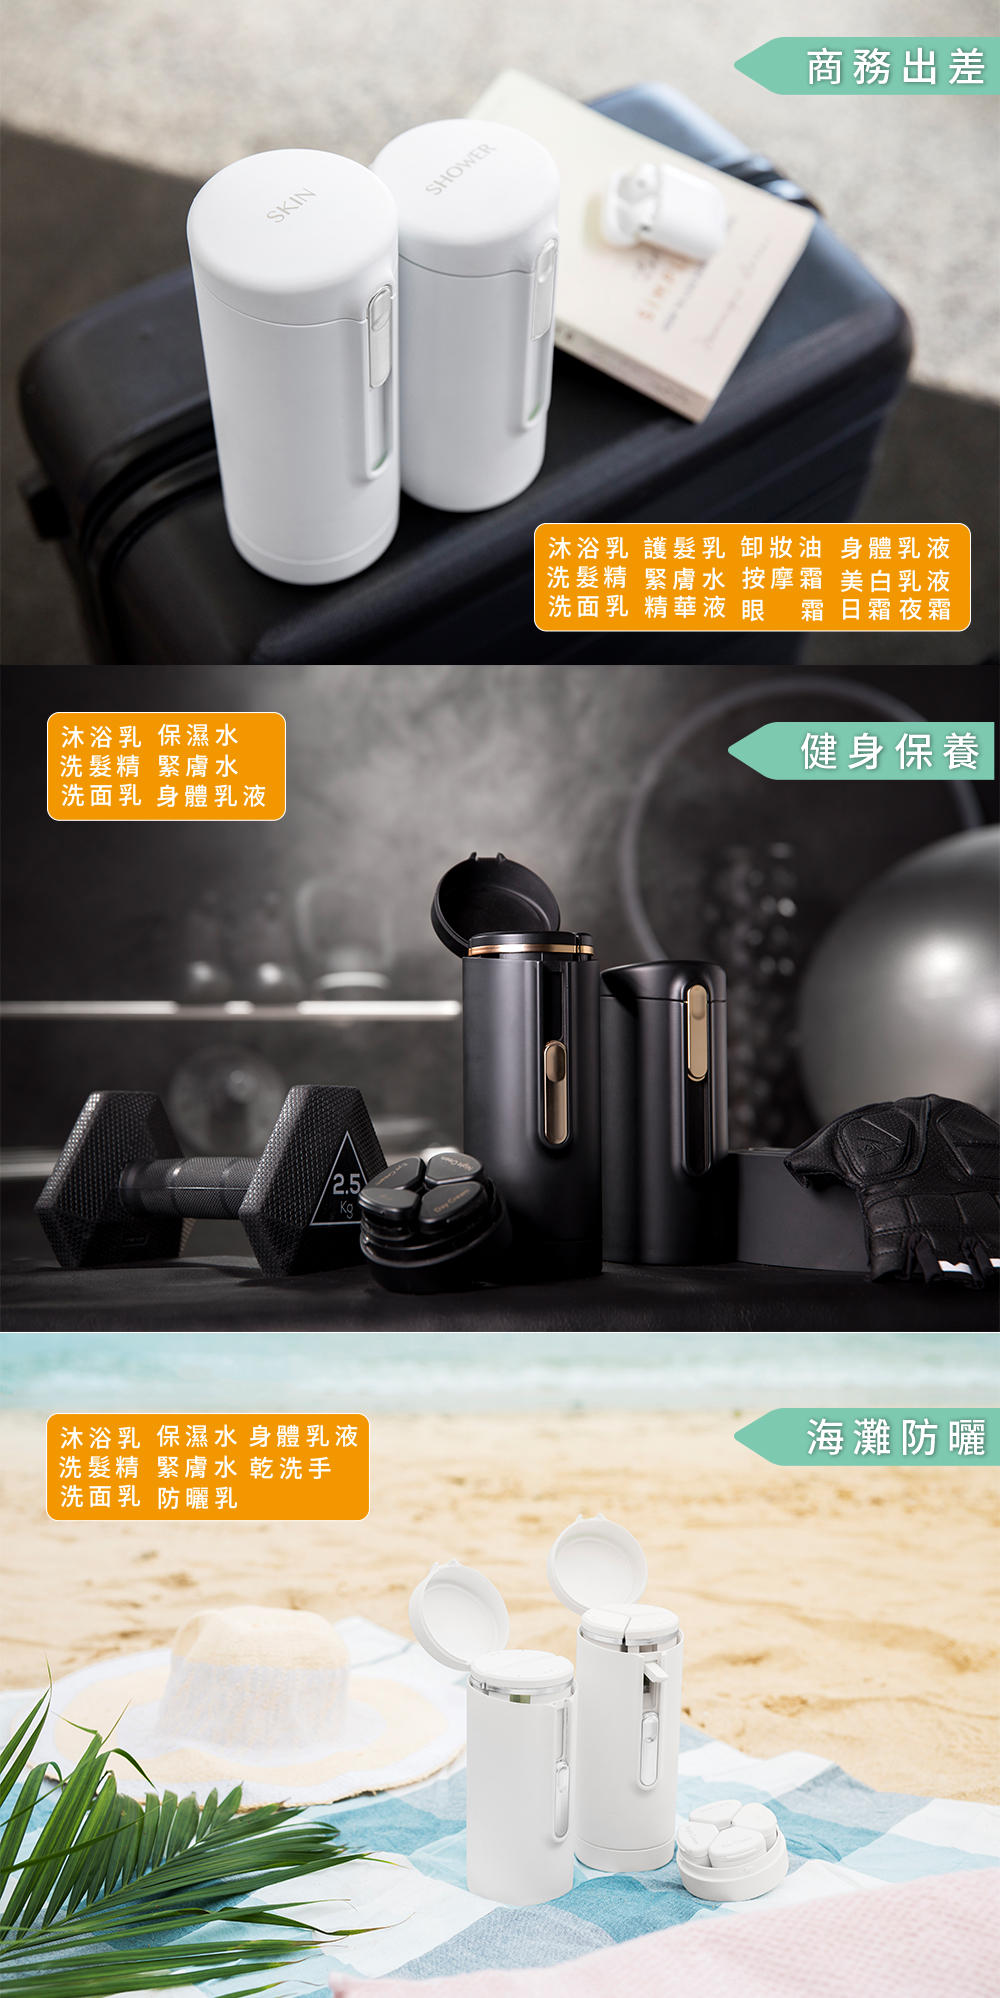 【新品】香港 Tic Design 旅行分裝收納瓶 V2.0 豪華組(沐浴+保養)-消光黑